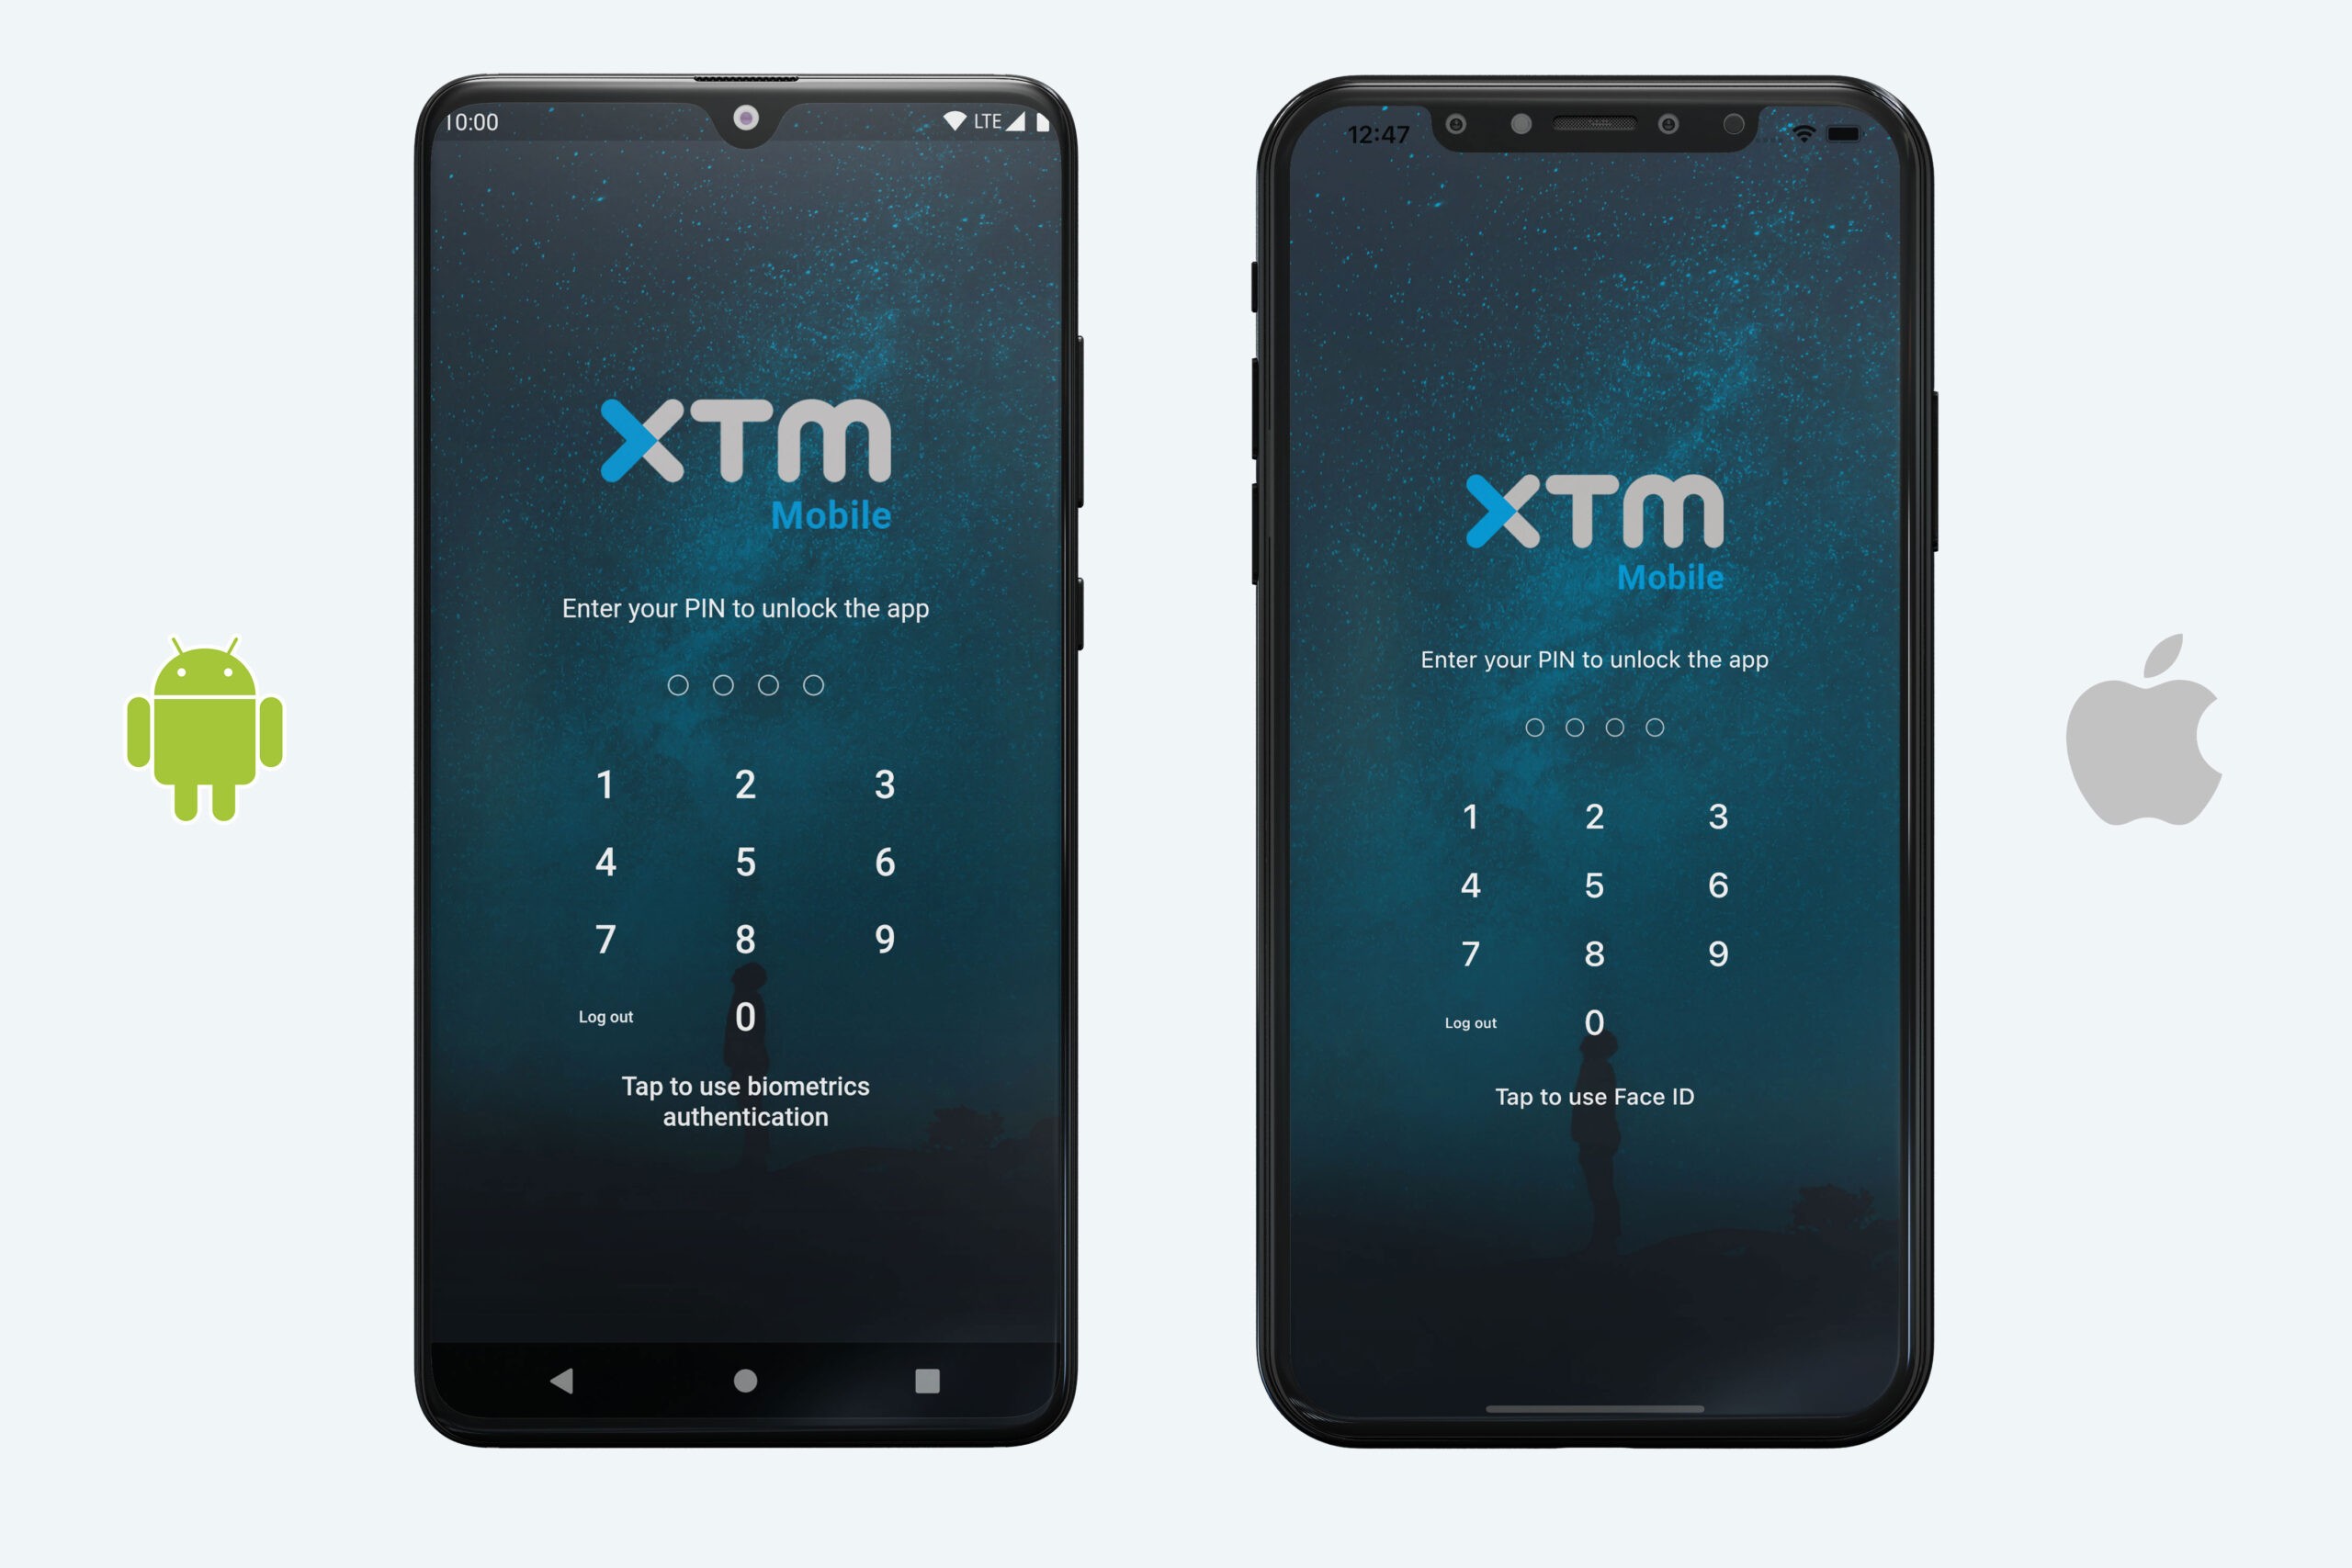 XTM Mobile fingerprint authentication